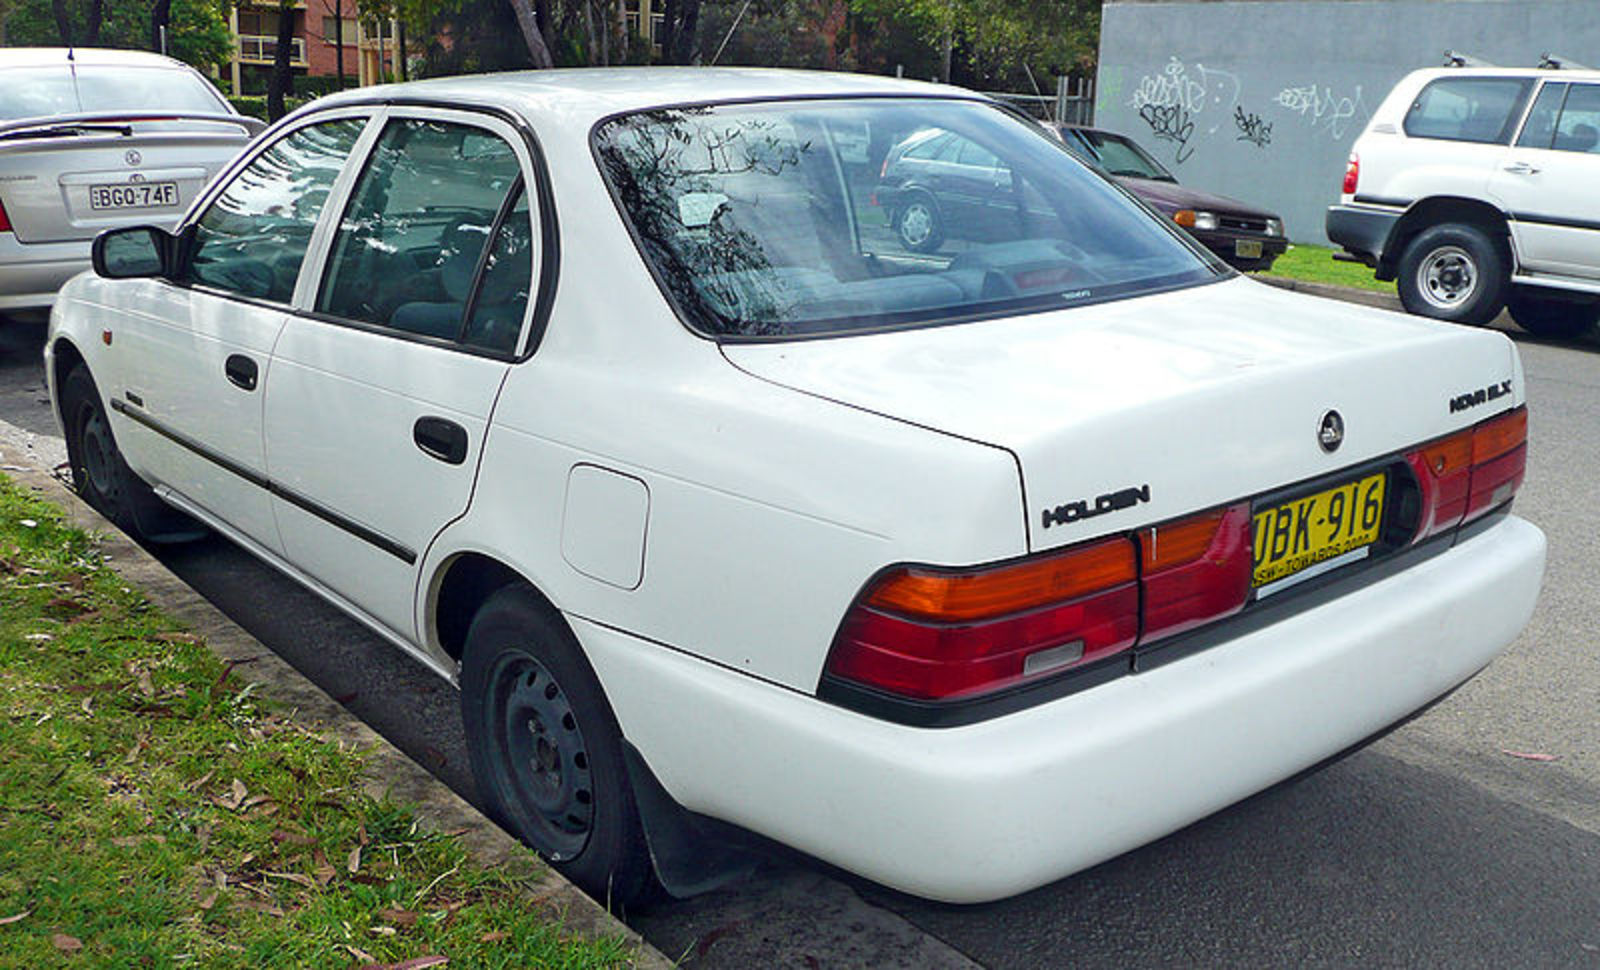 Australia Holden Nova: